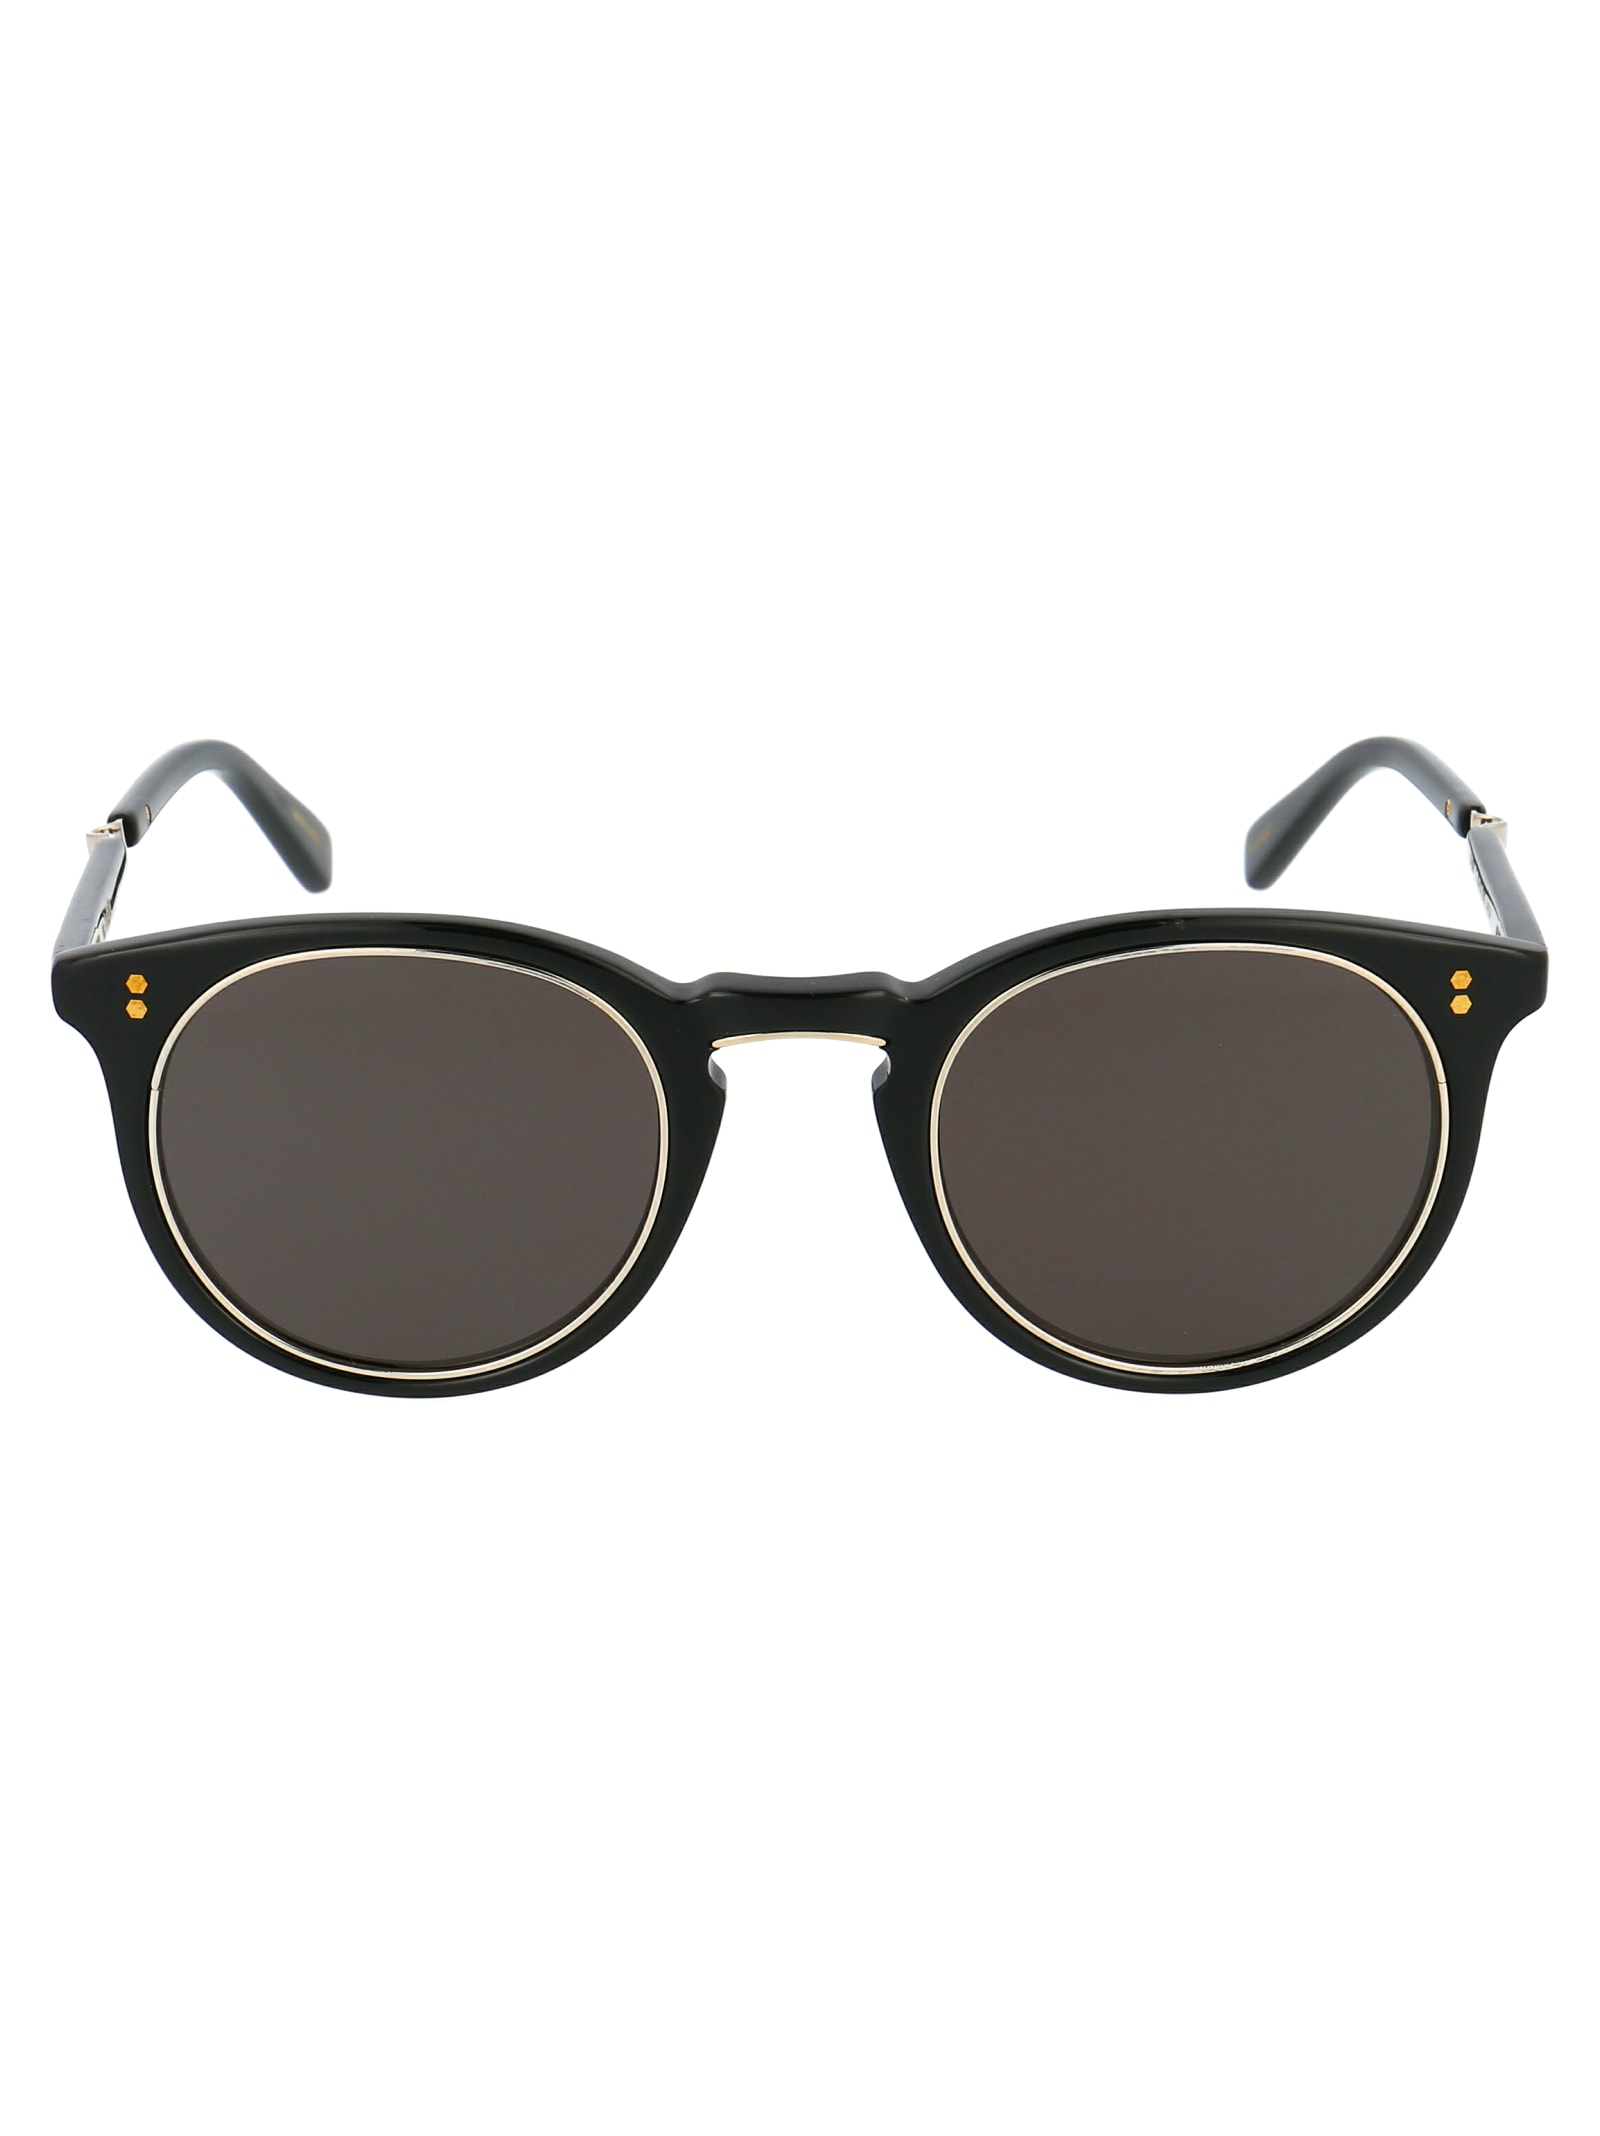 Garrett Leight Crosby S 44 Sunglasses In Bk-12kg/bk Plr